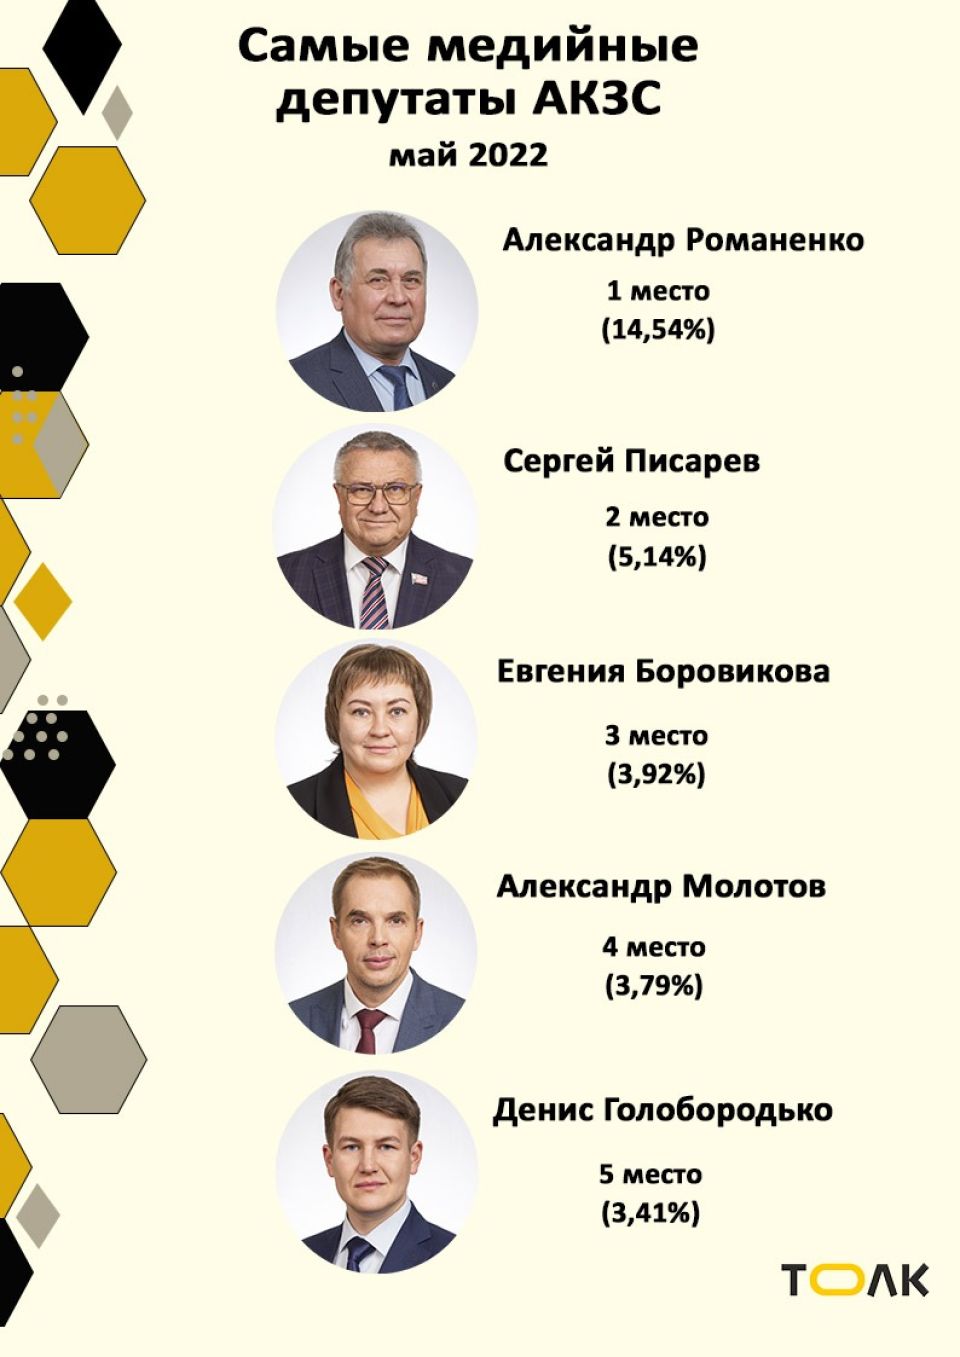 Рейтинг медийности депутатов АКЗС в мае 2022 года